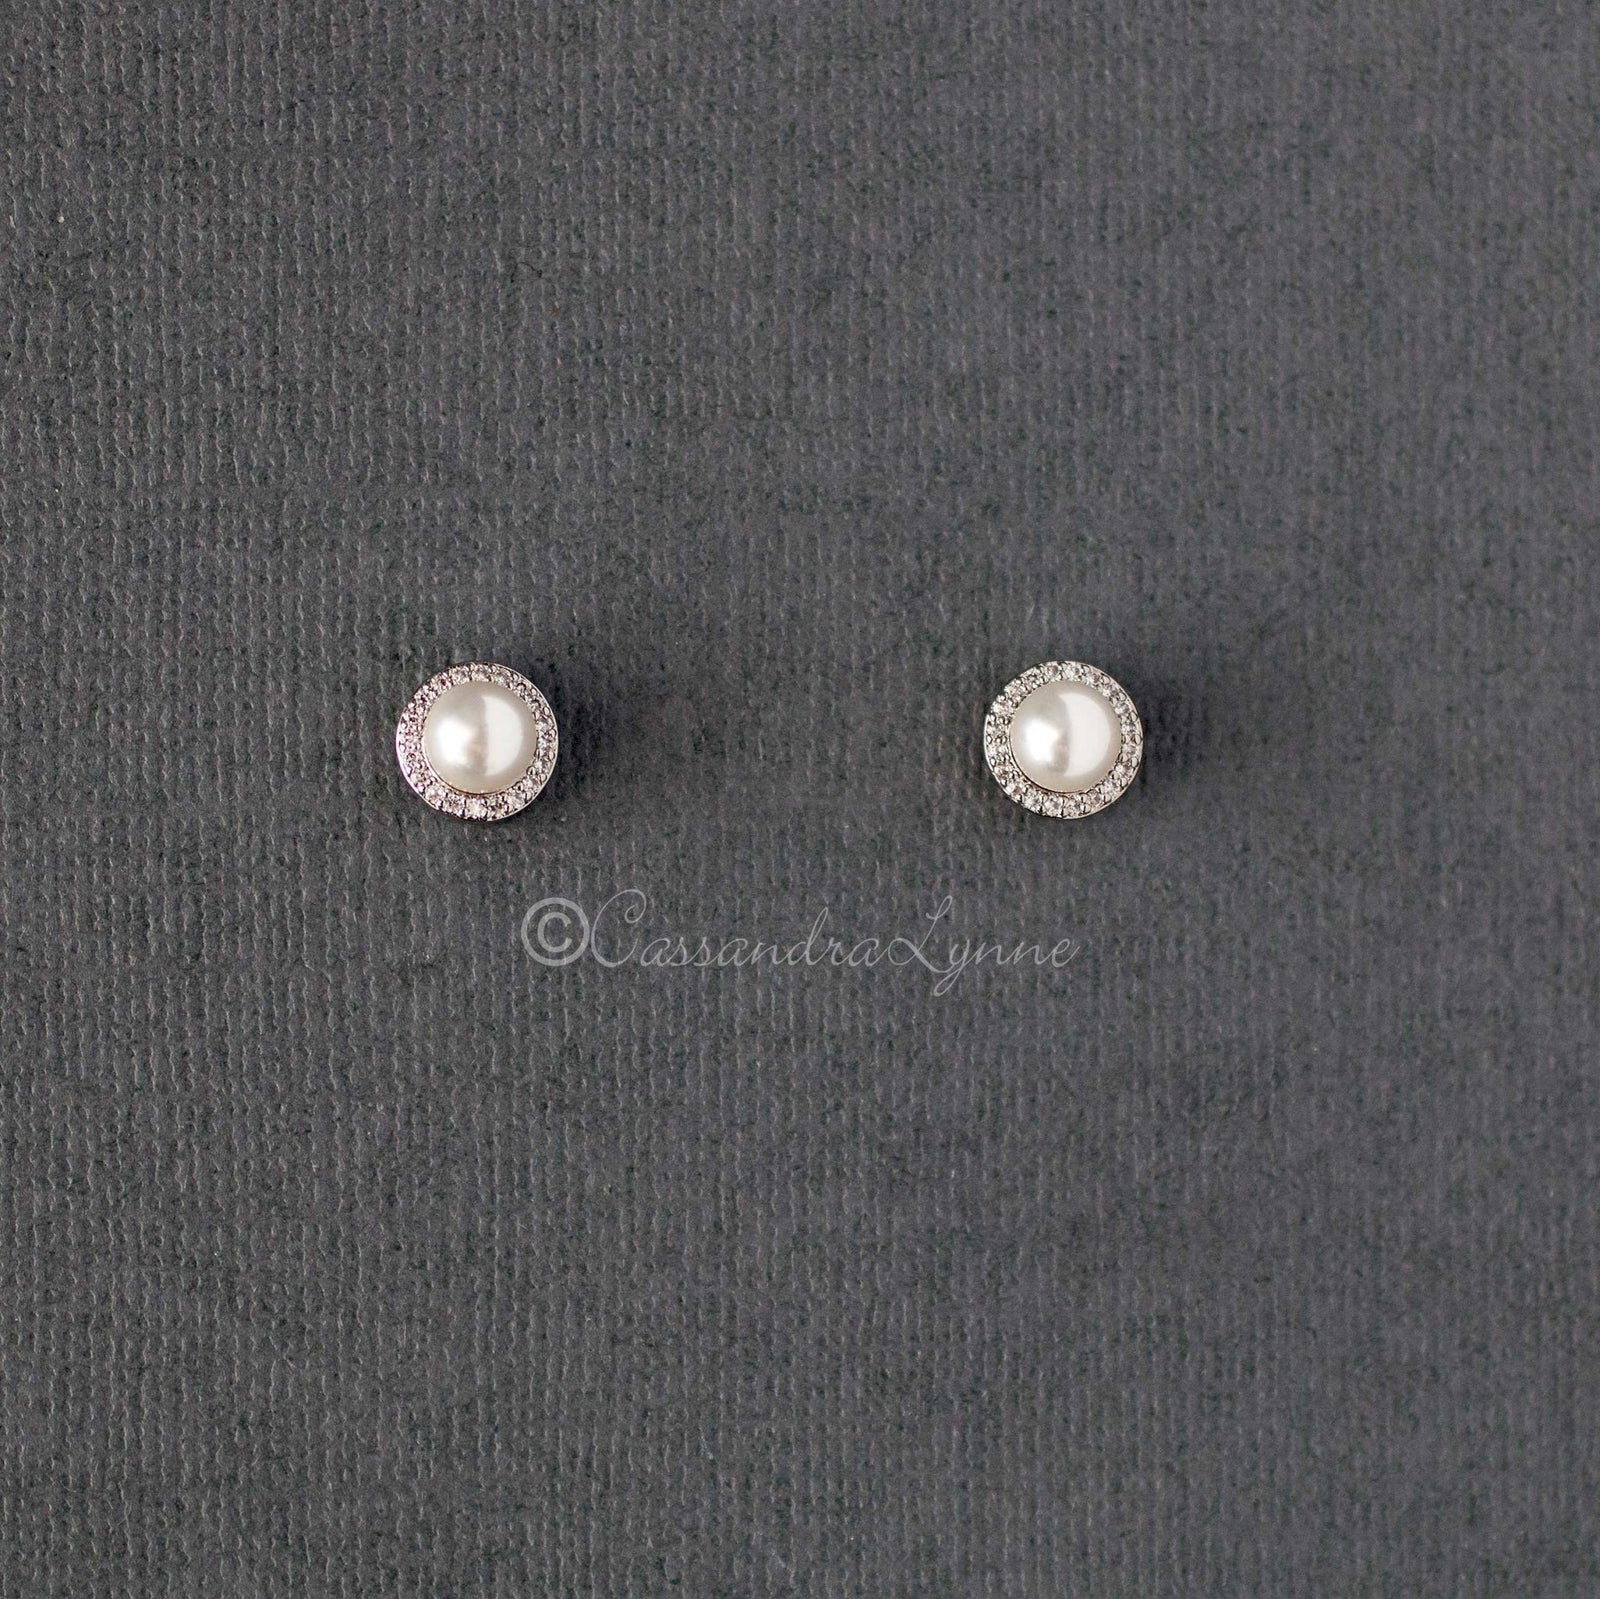 Pearl Stud Earrings in Pave Setting - Cassandra Lynne